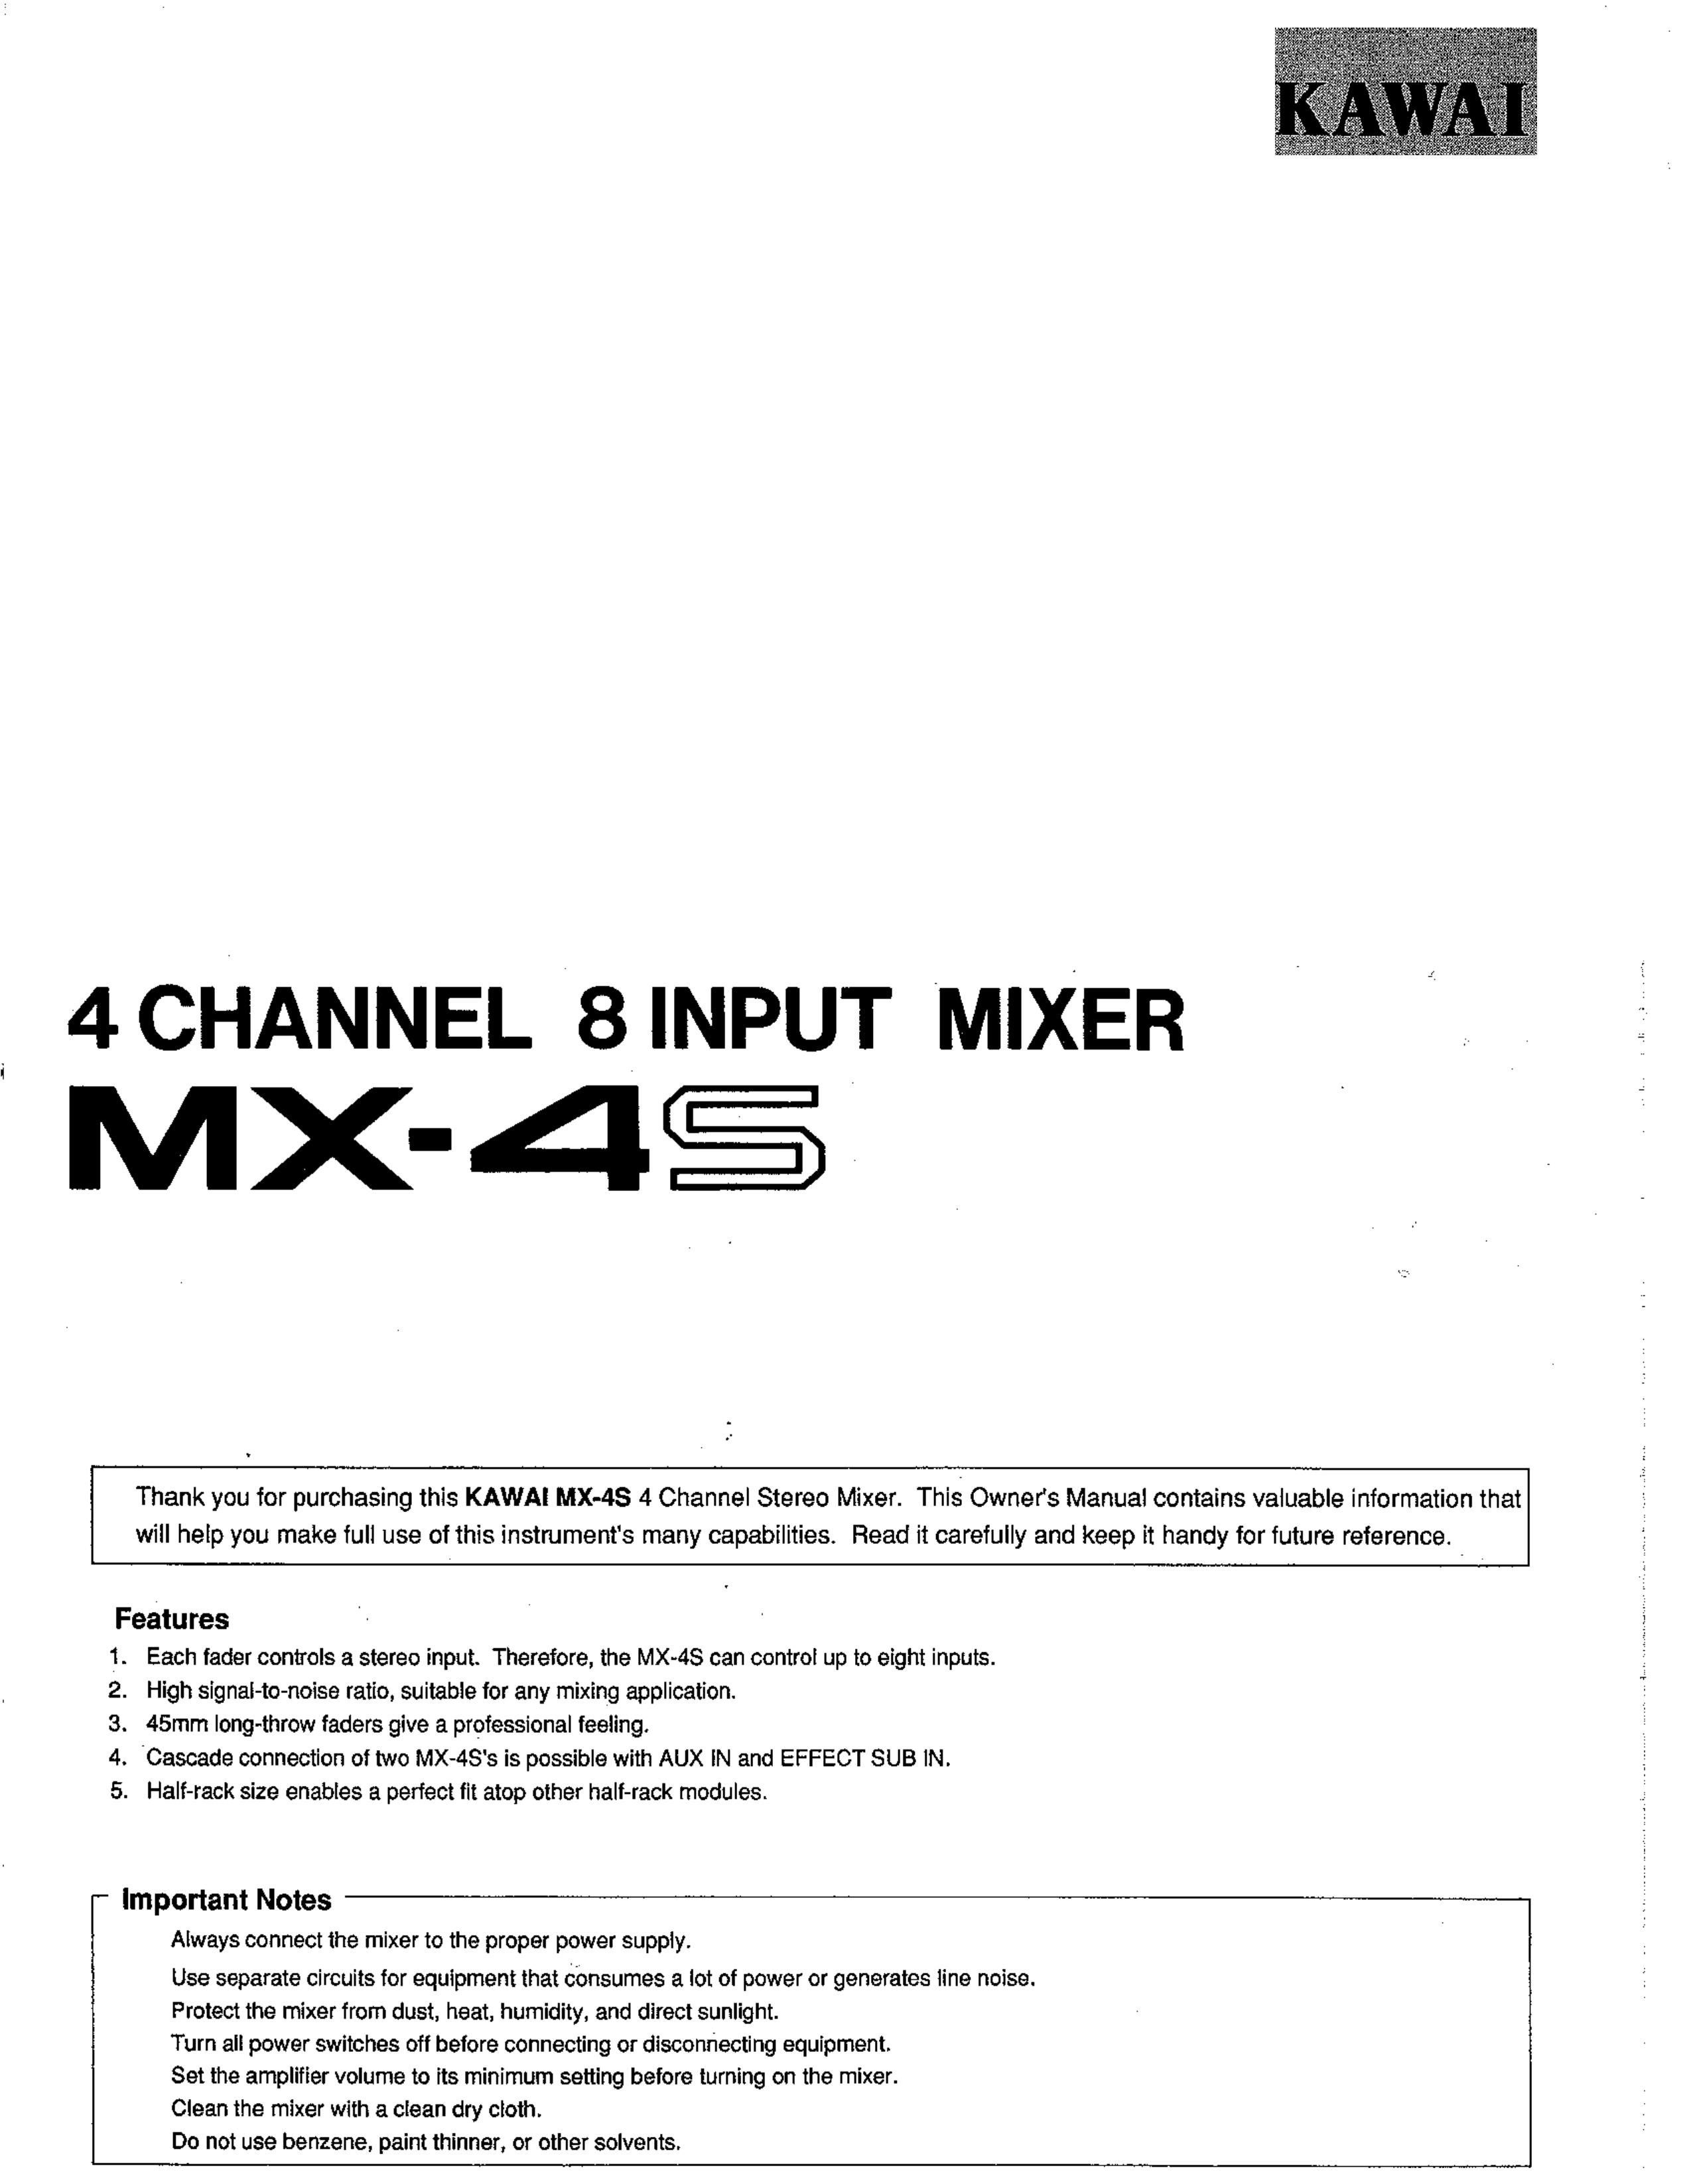 Kawai MX-4S Music Mixer User Manual